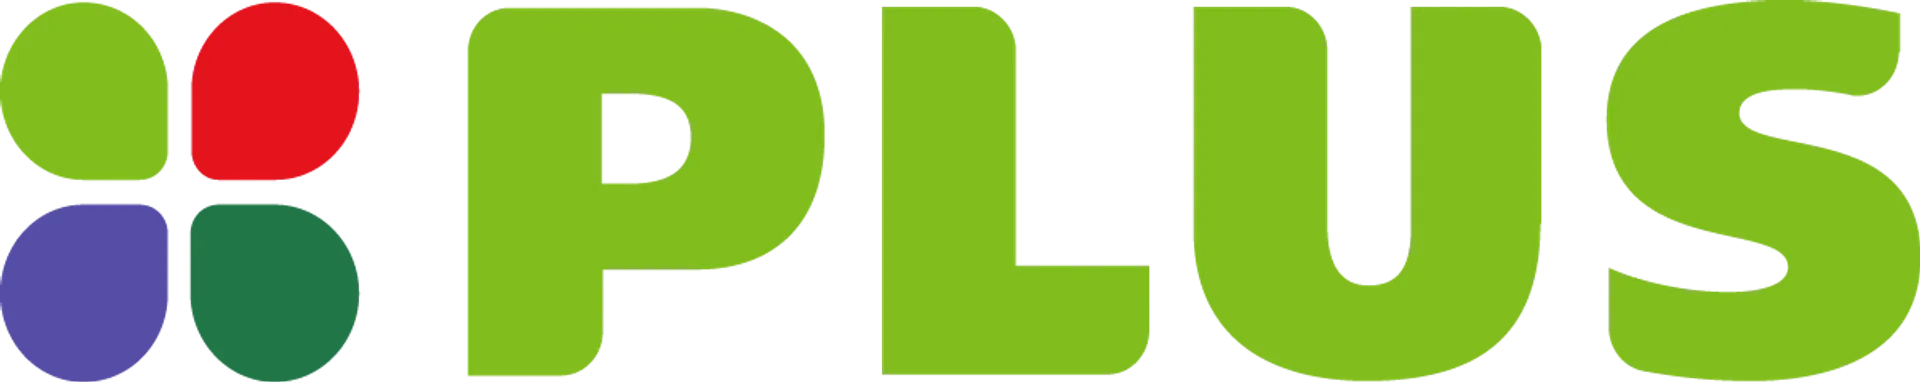 PLUS logo in de folder van deze week